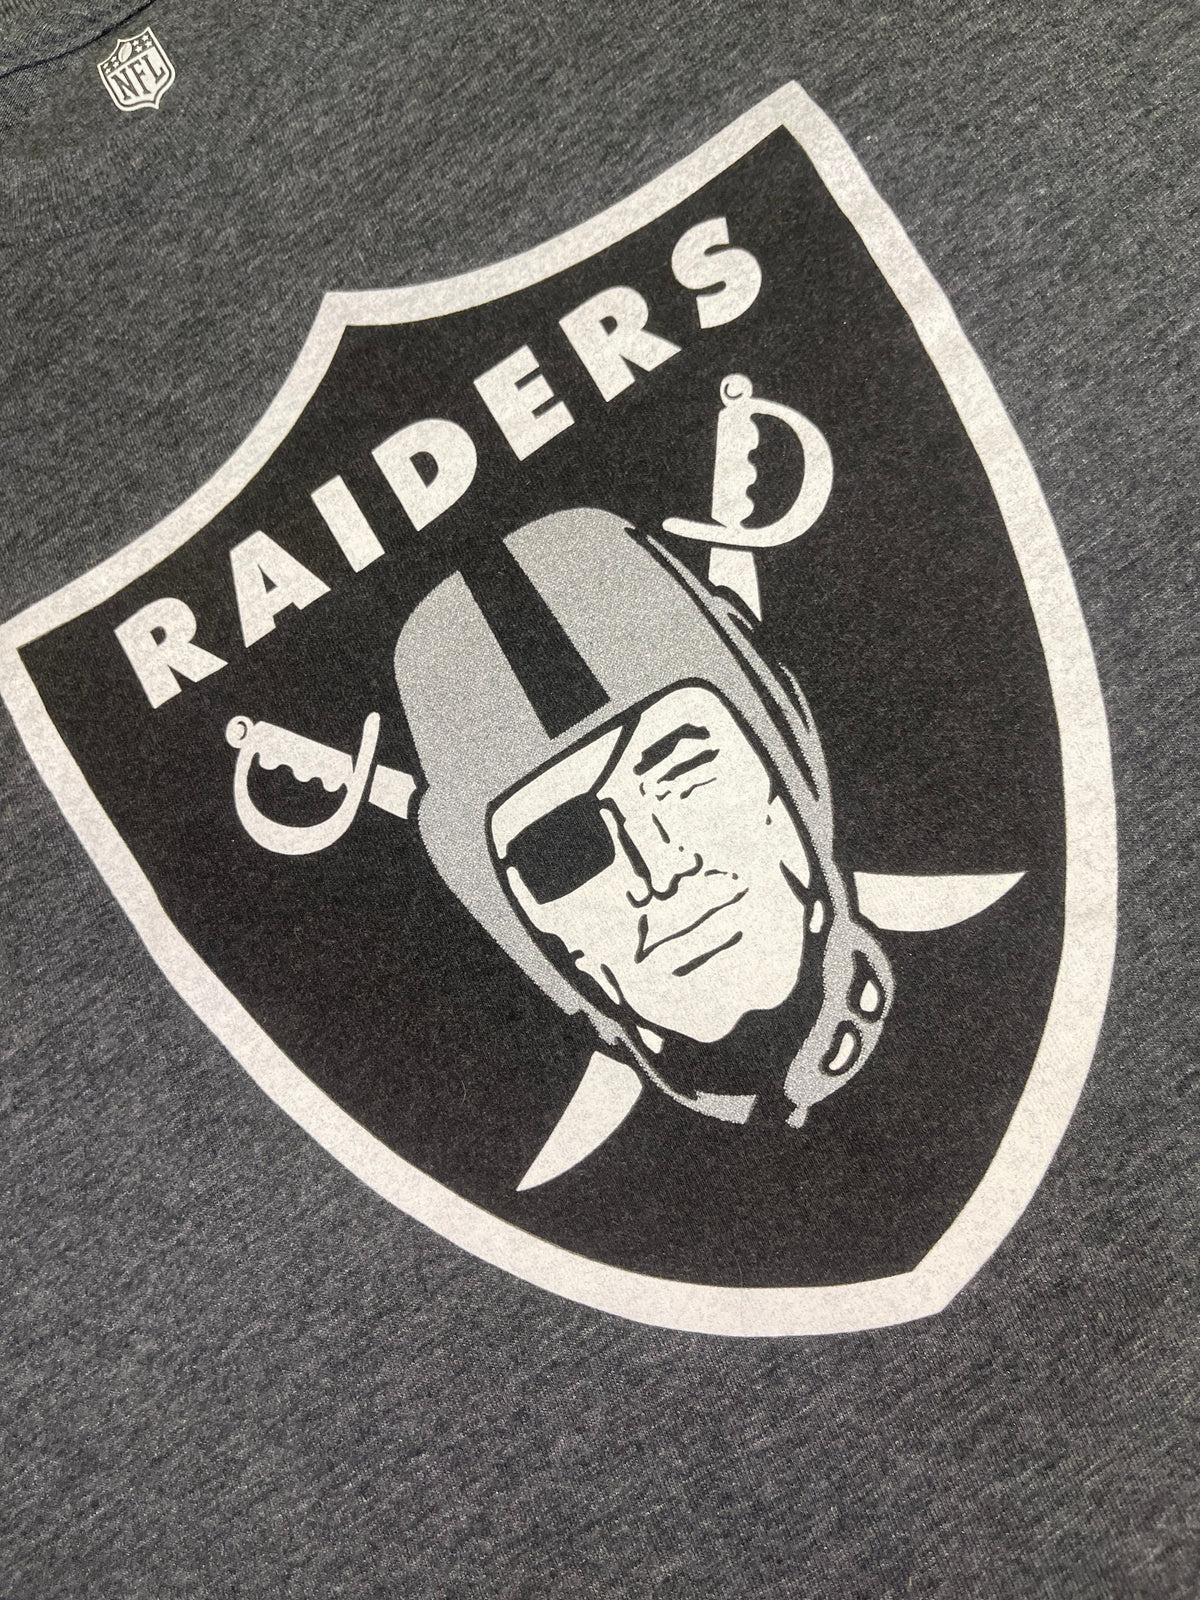 NFL Las Vegas Raiders Grey T-Shirt Youth Small 8